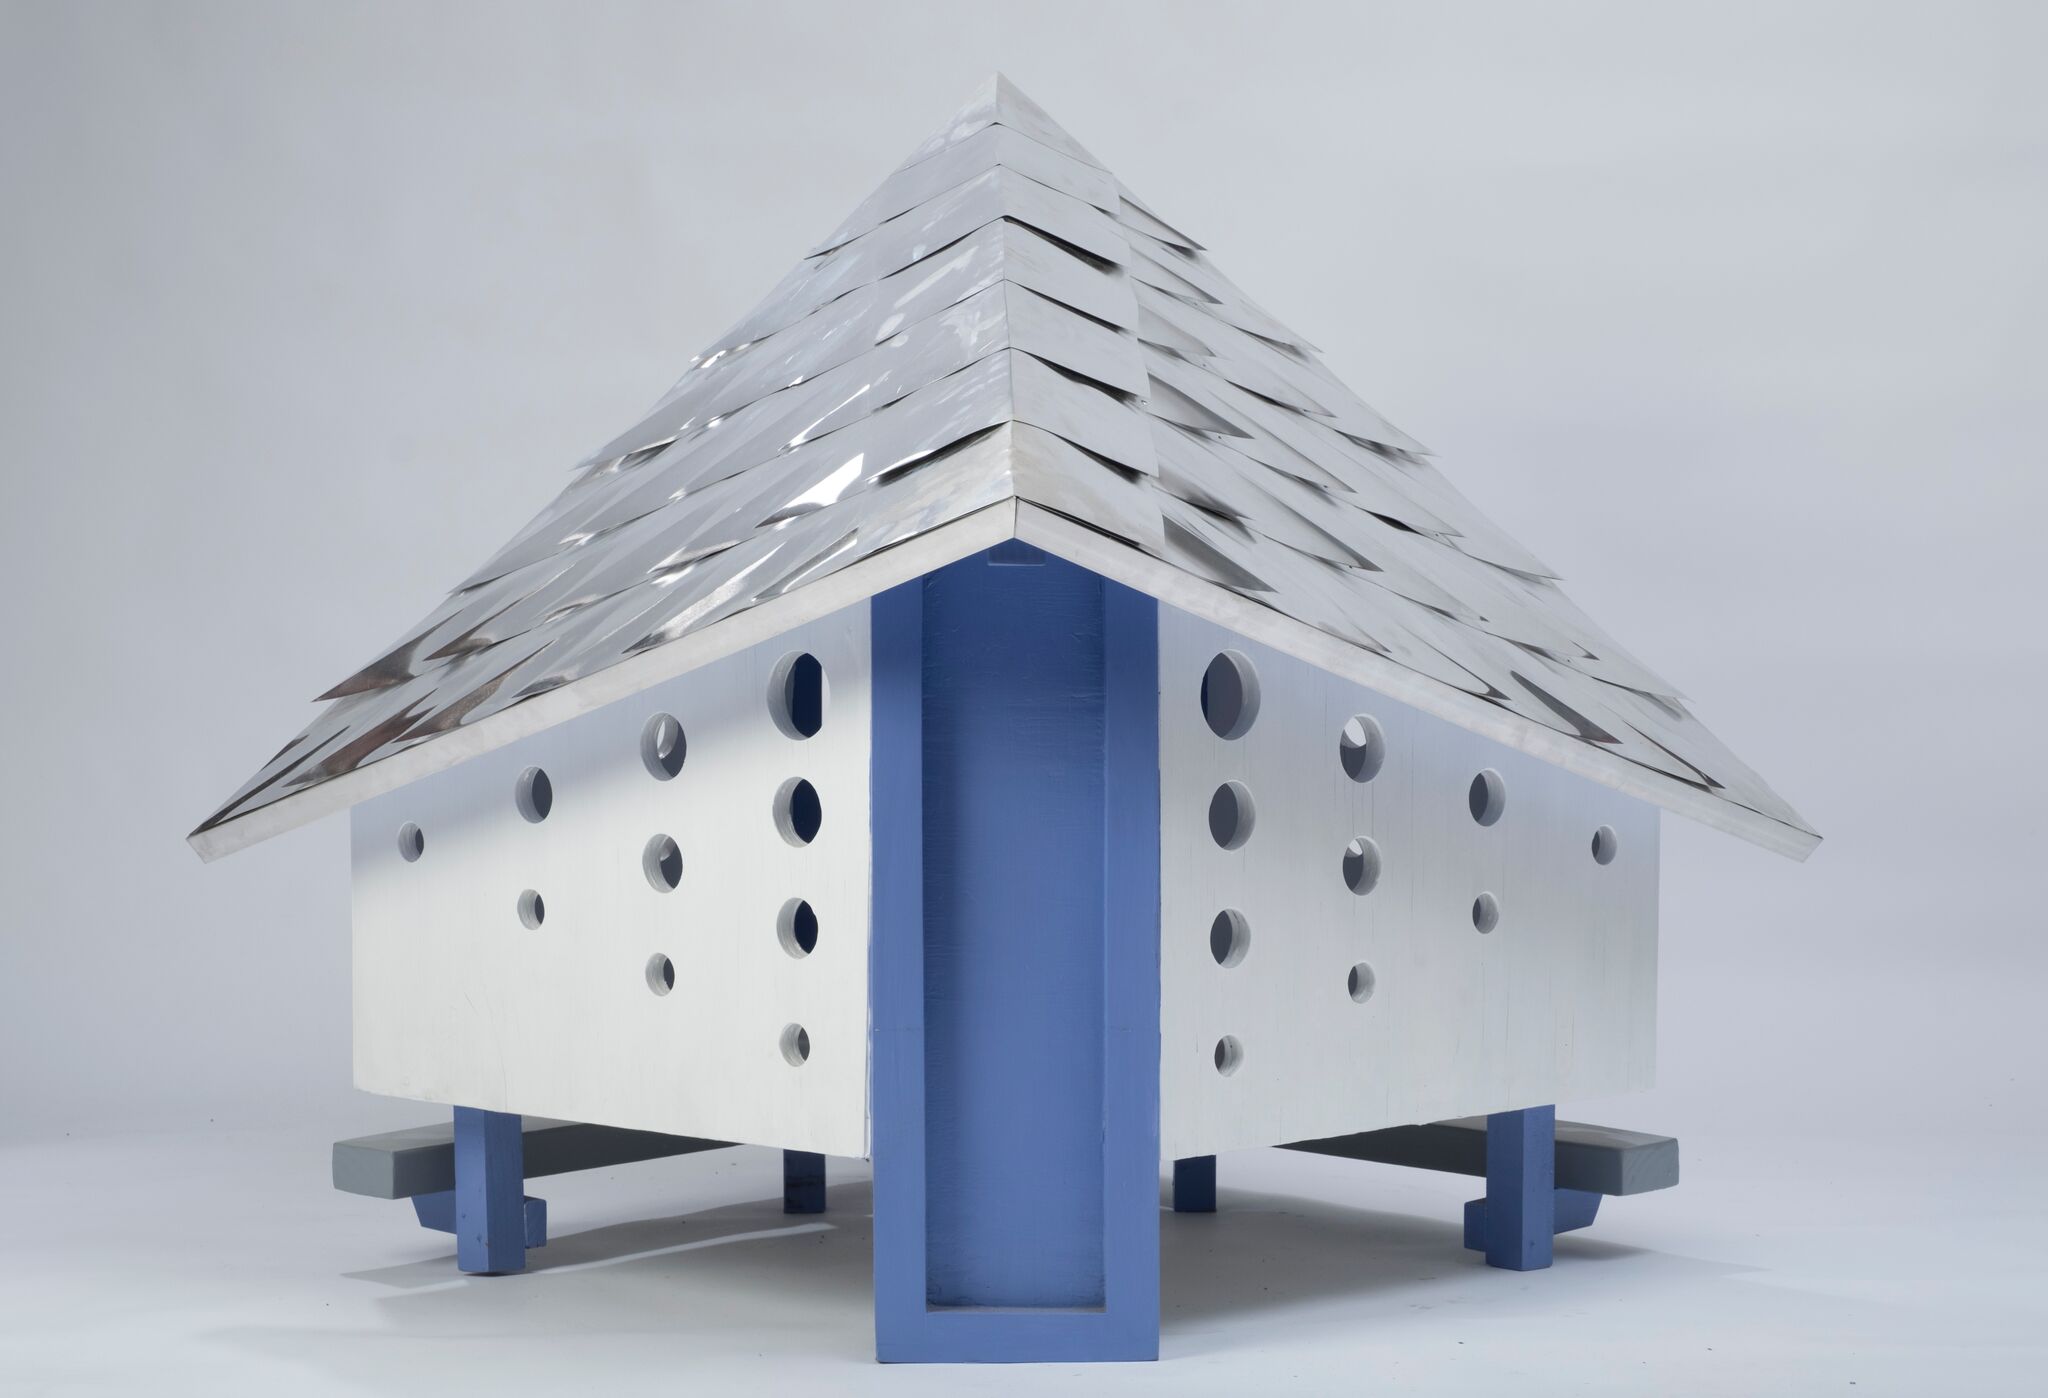 Fleischman Garcia Architects - Pawvillion - Image 9 of 9